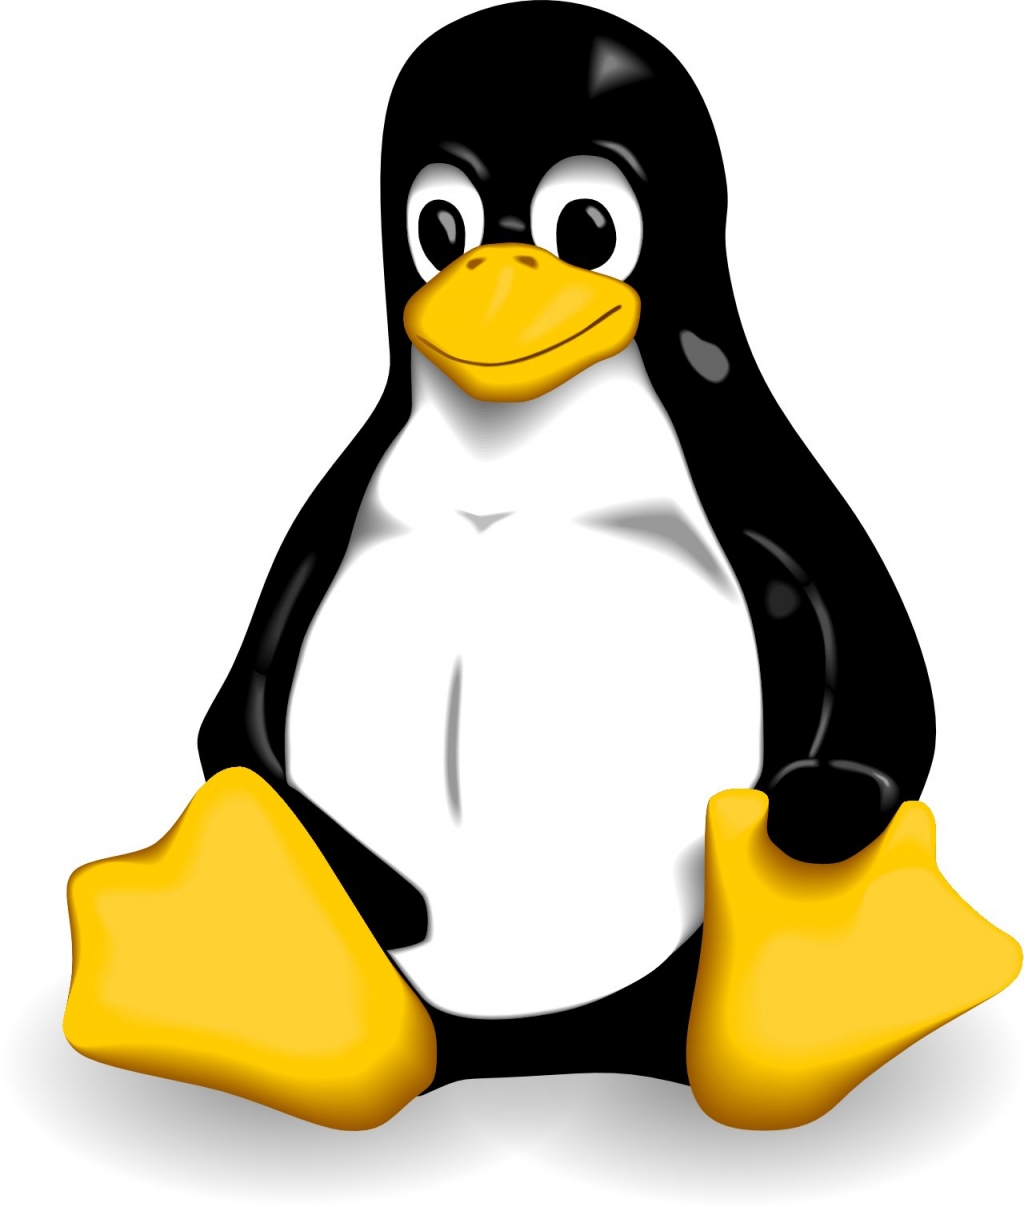 Логотип Linux